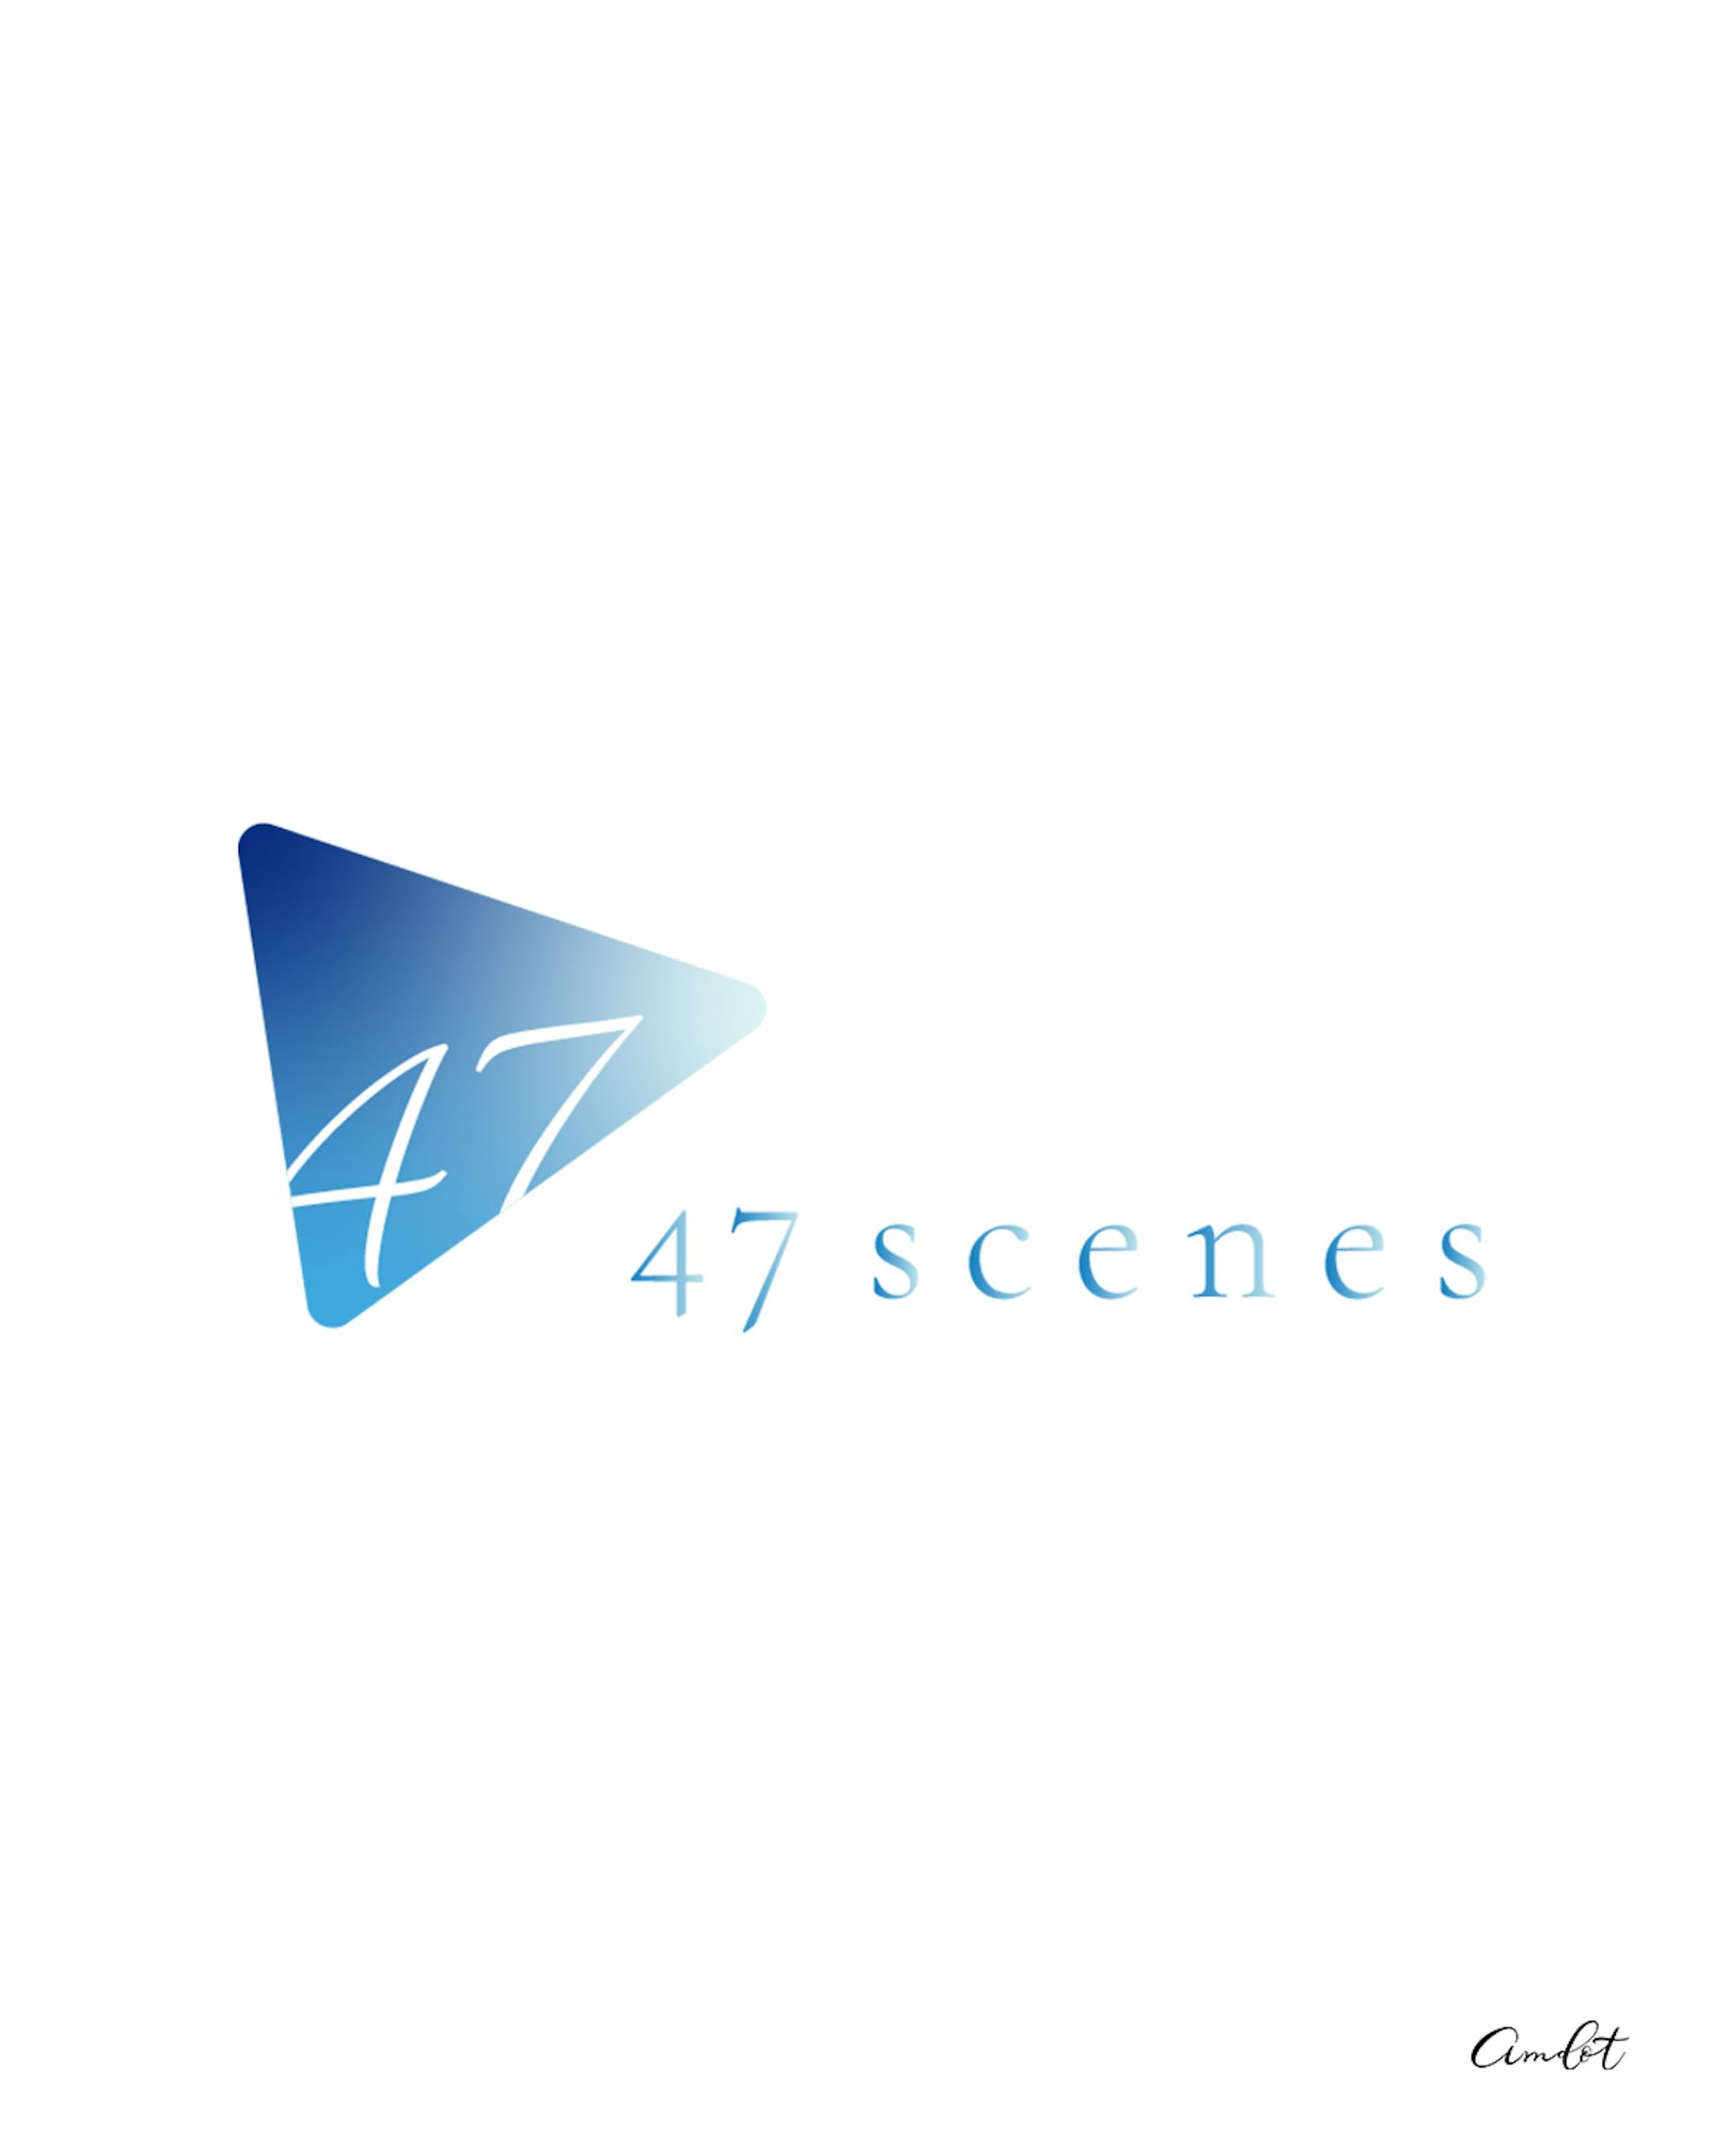 47scenes ロゴ-1